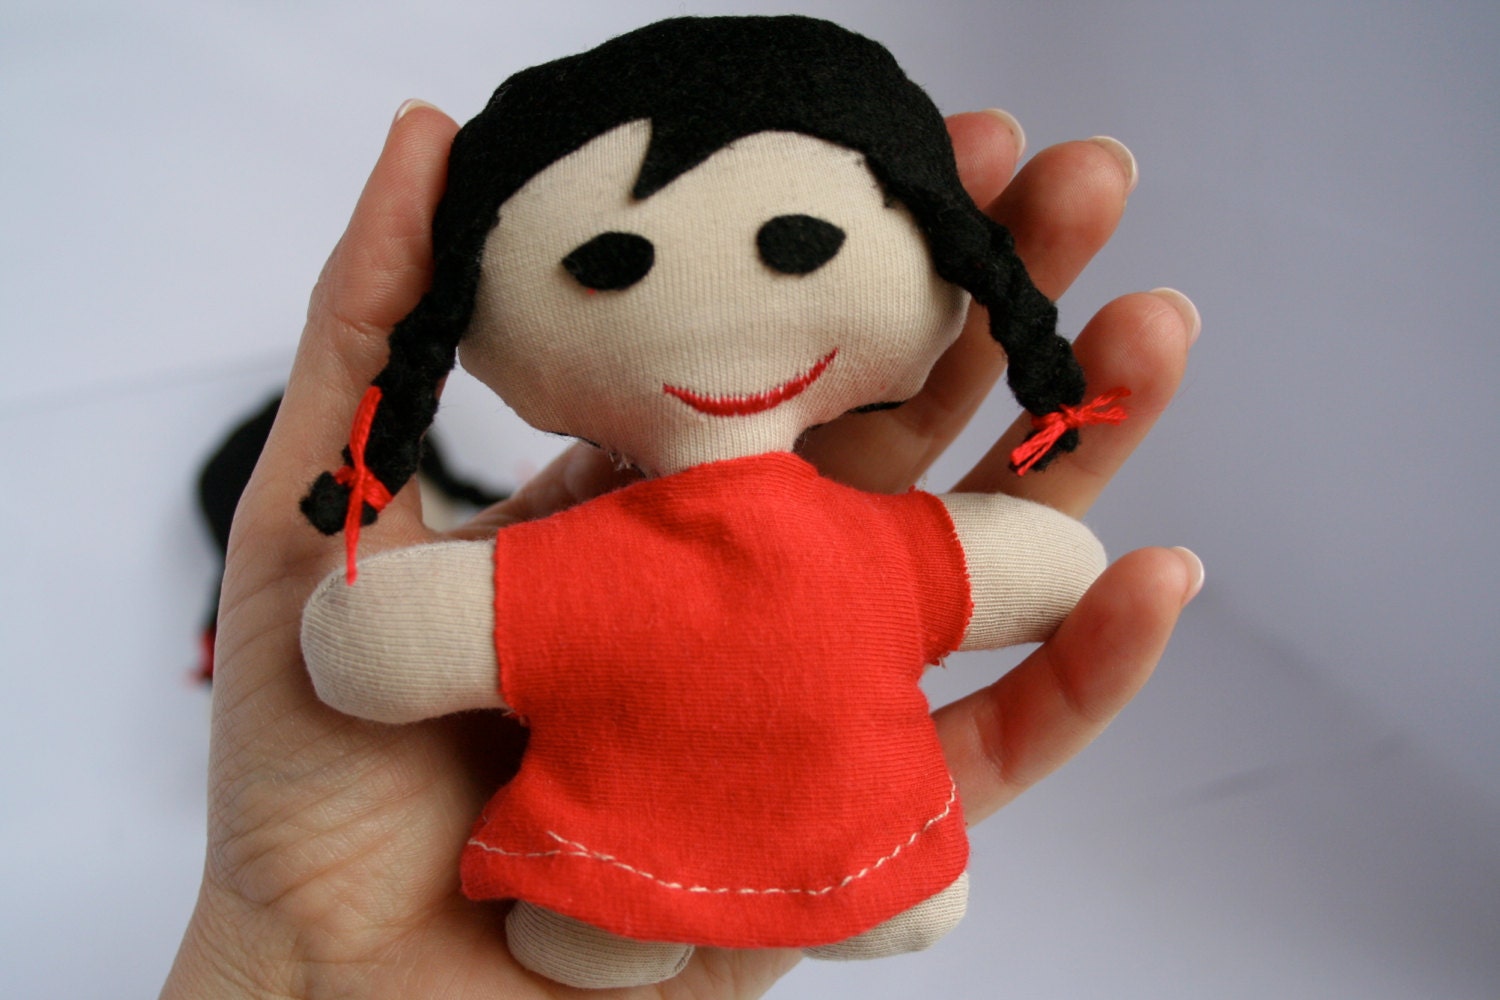 rag doll small red, stuffed toy, pocket doll, ragdoll Mimmi the Minni - 3lllaHandmade